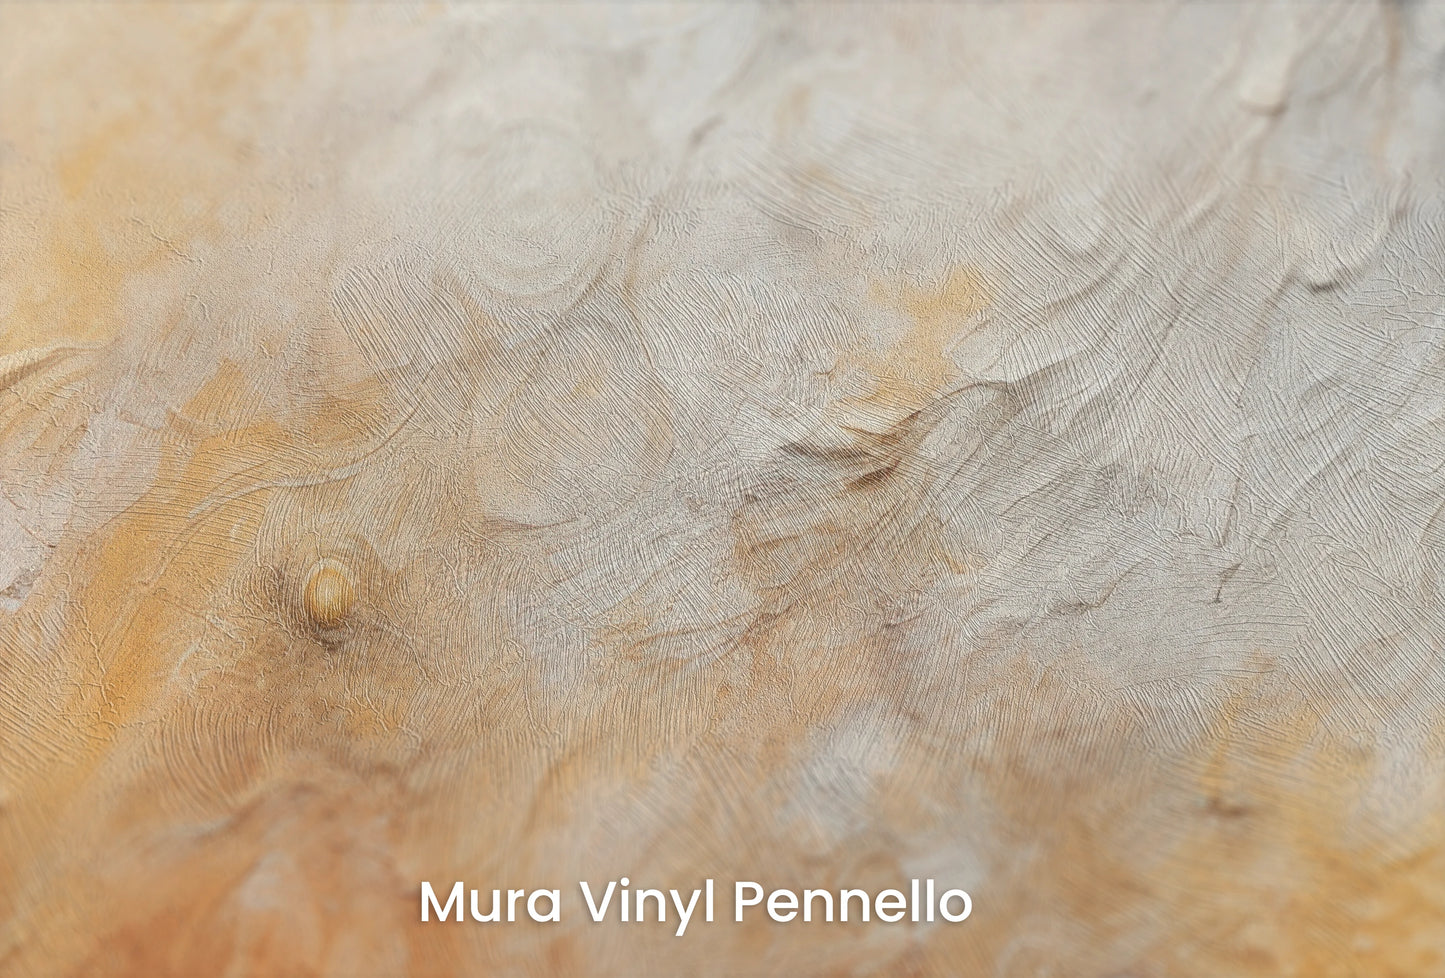 Zbliżenie na artystyczną fototapetę o nazwie Lunar Eclipse na podłożu Mura Vinyl Pennello - faktura pociągnięć pędzla malarskiego.